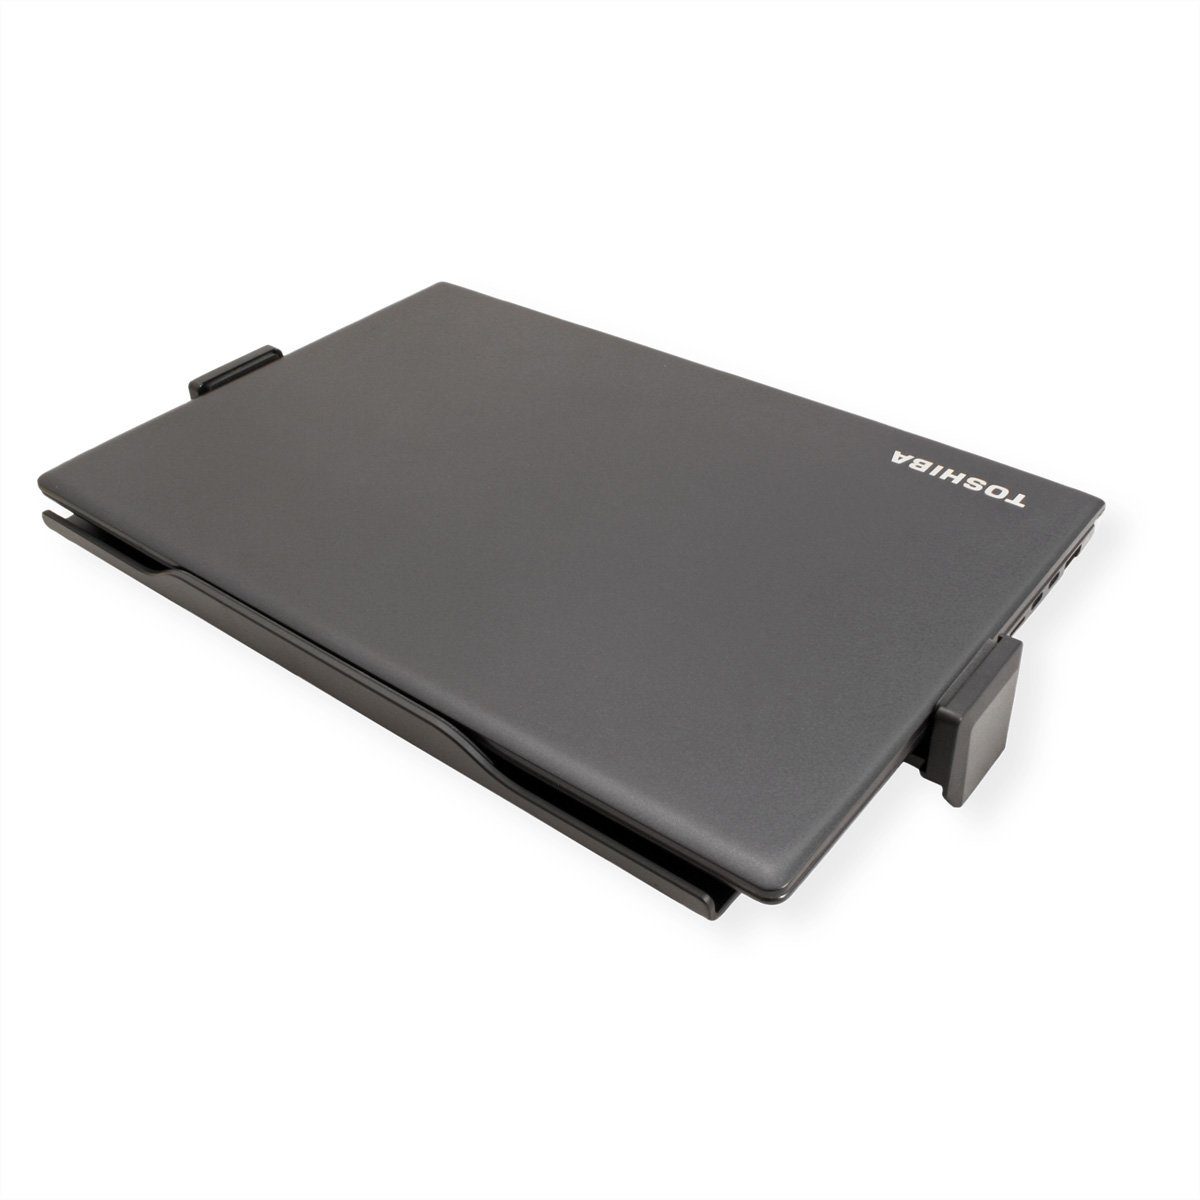 kompatibel VESA Monitor-Halterung, Universal Notebook-/Tablet-Halterung, (flexibel) VALUE